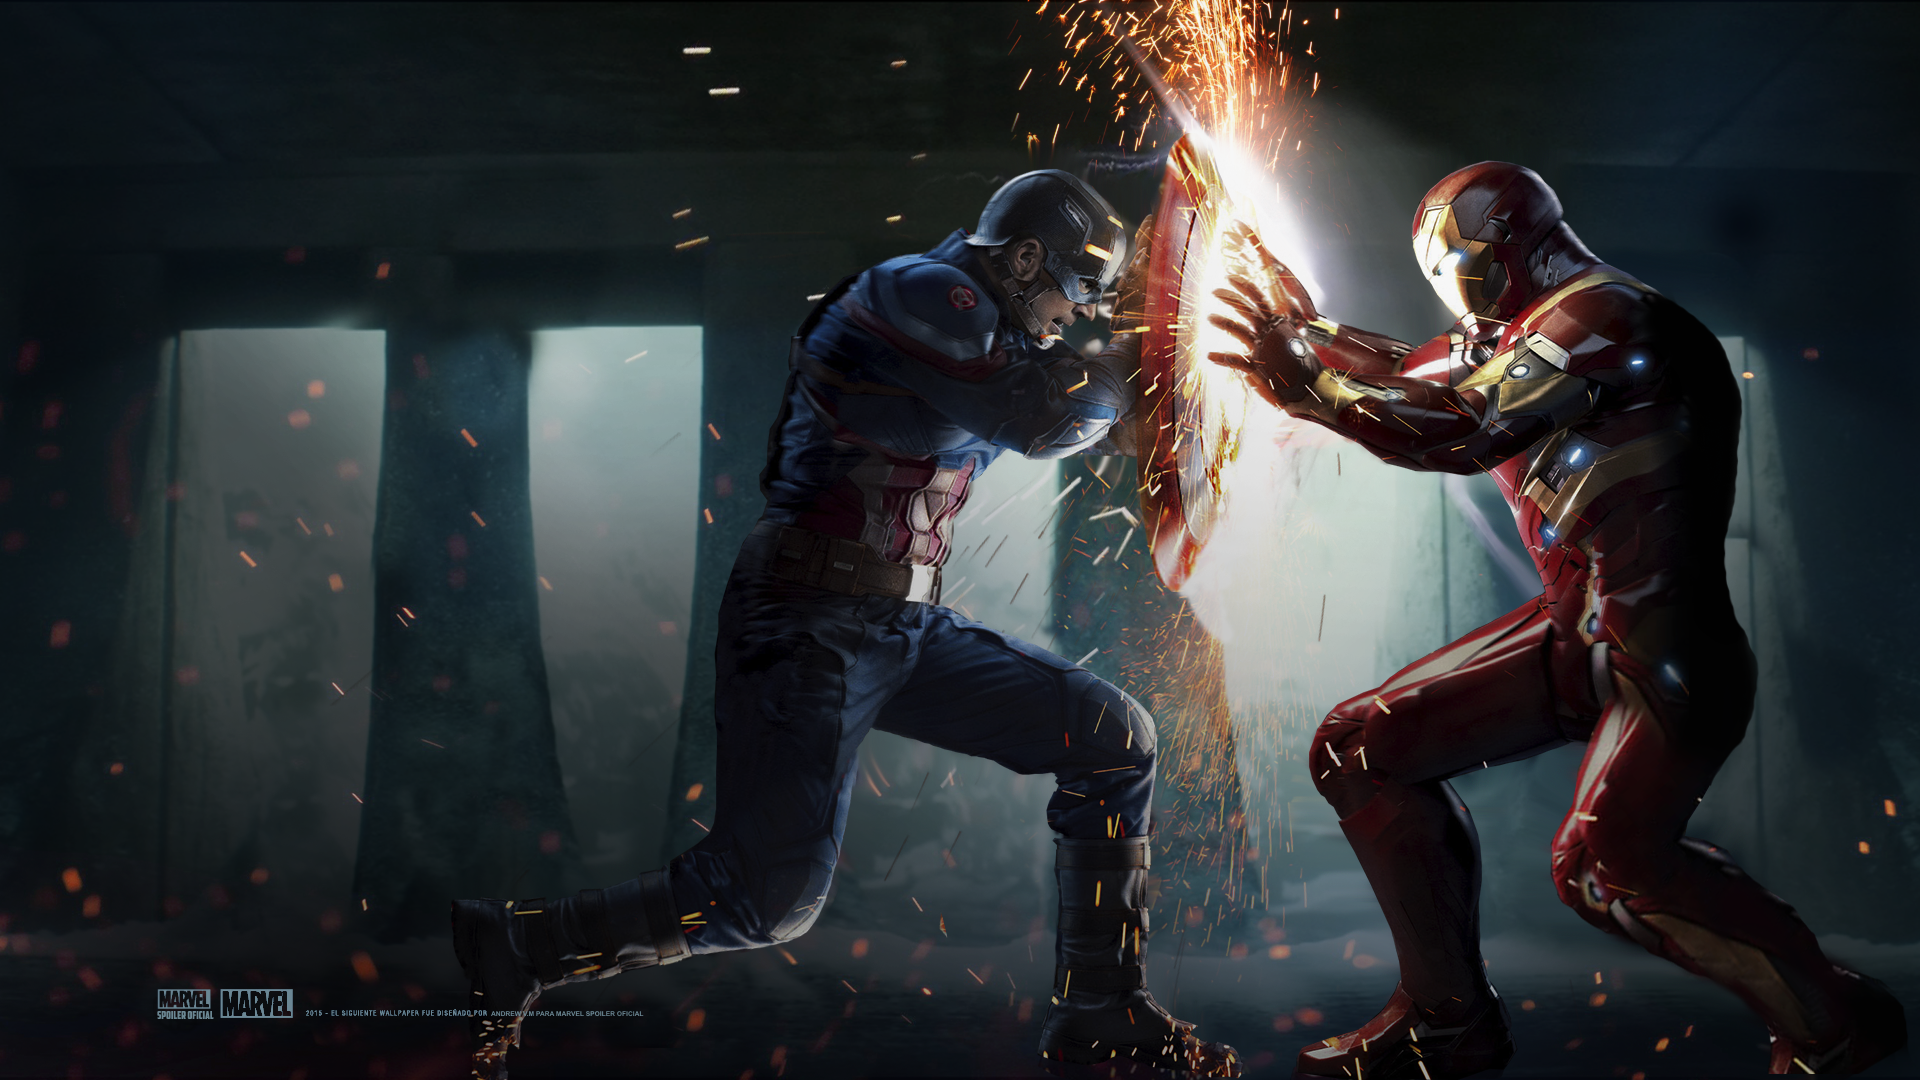 Первый мститель Противостояние человек паук. Капитан Америка и Железный человек Противостояние. Первый мститель Противостояние Железный человек.